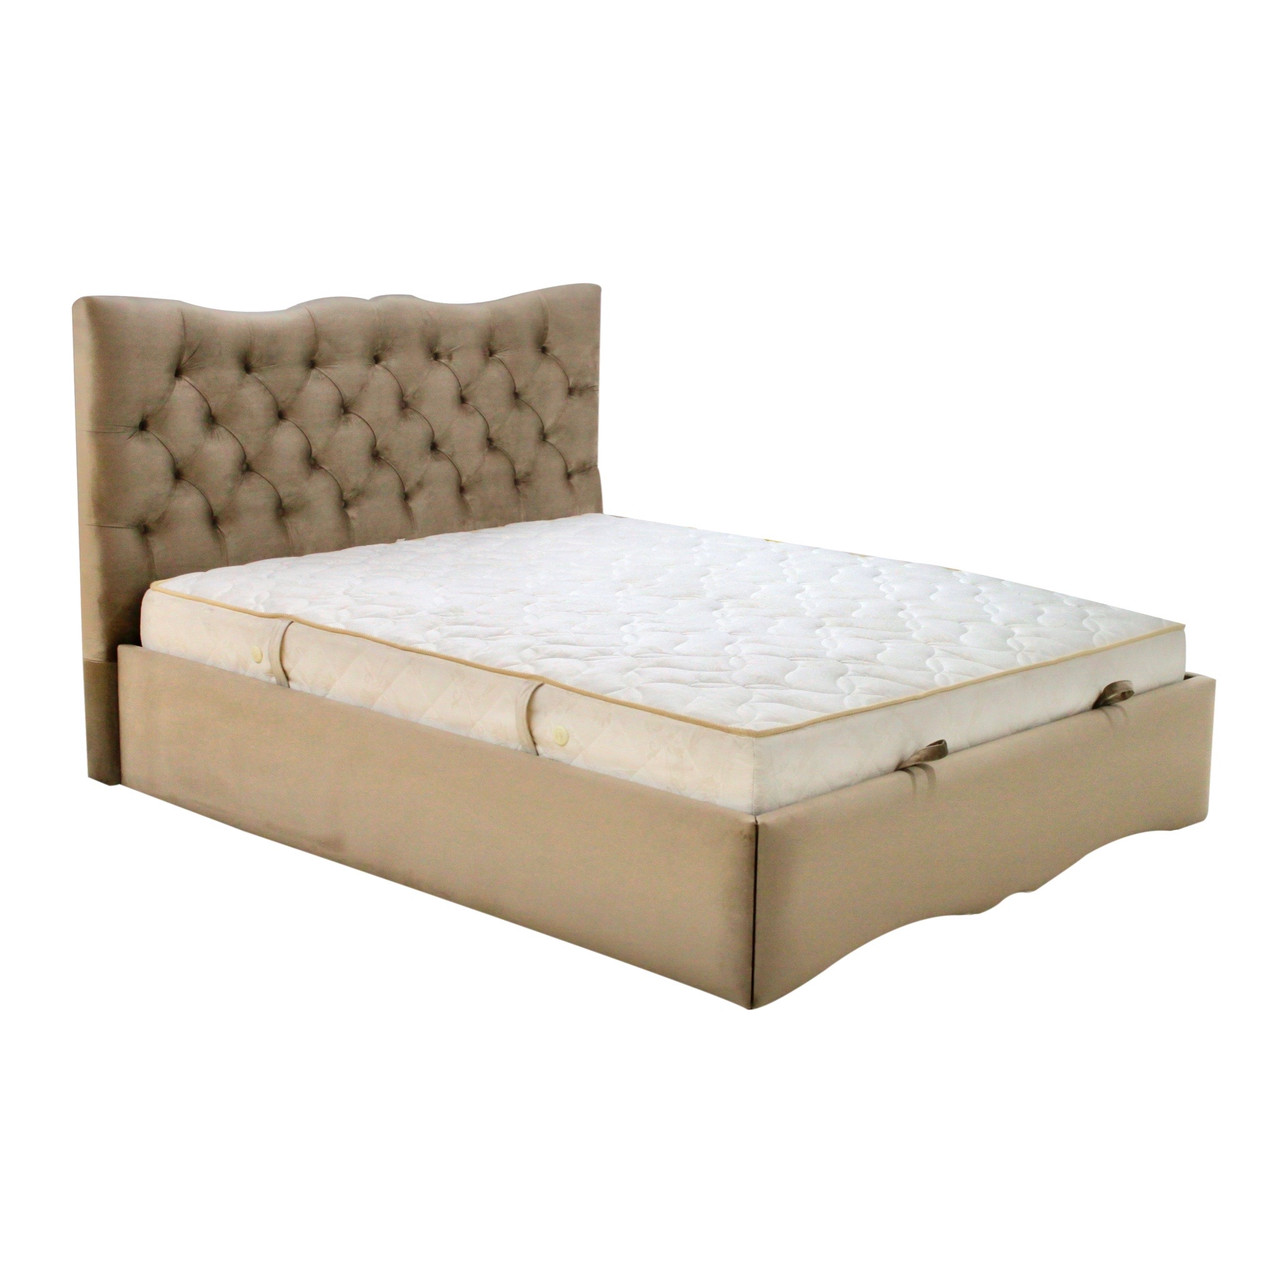 Королівське ліжко м'яке двомісне MeBelle ZARURA 180 х 200 з ламеллю, світло-коричневий бежевий велюр